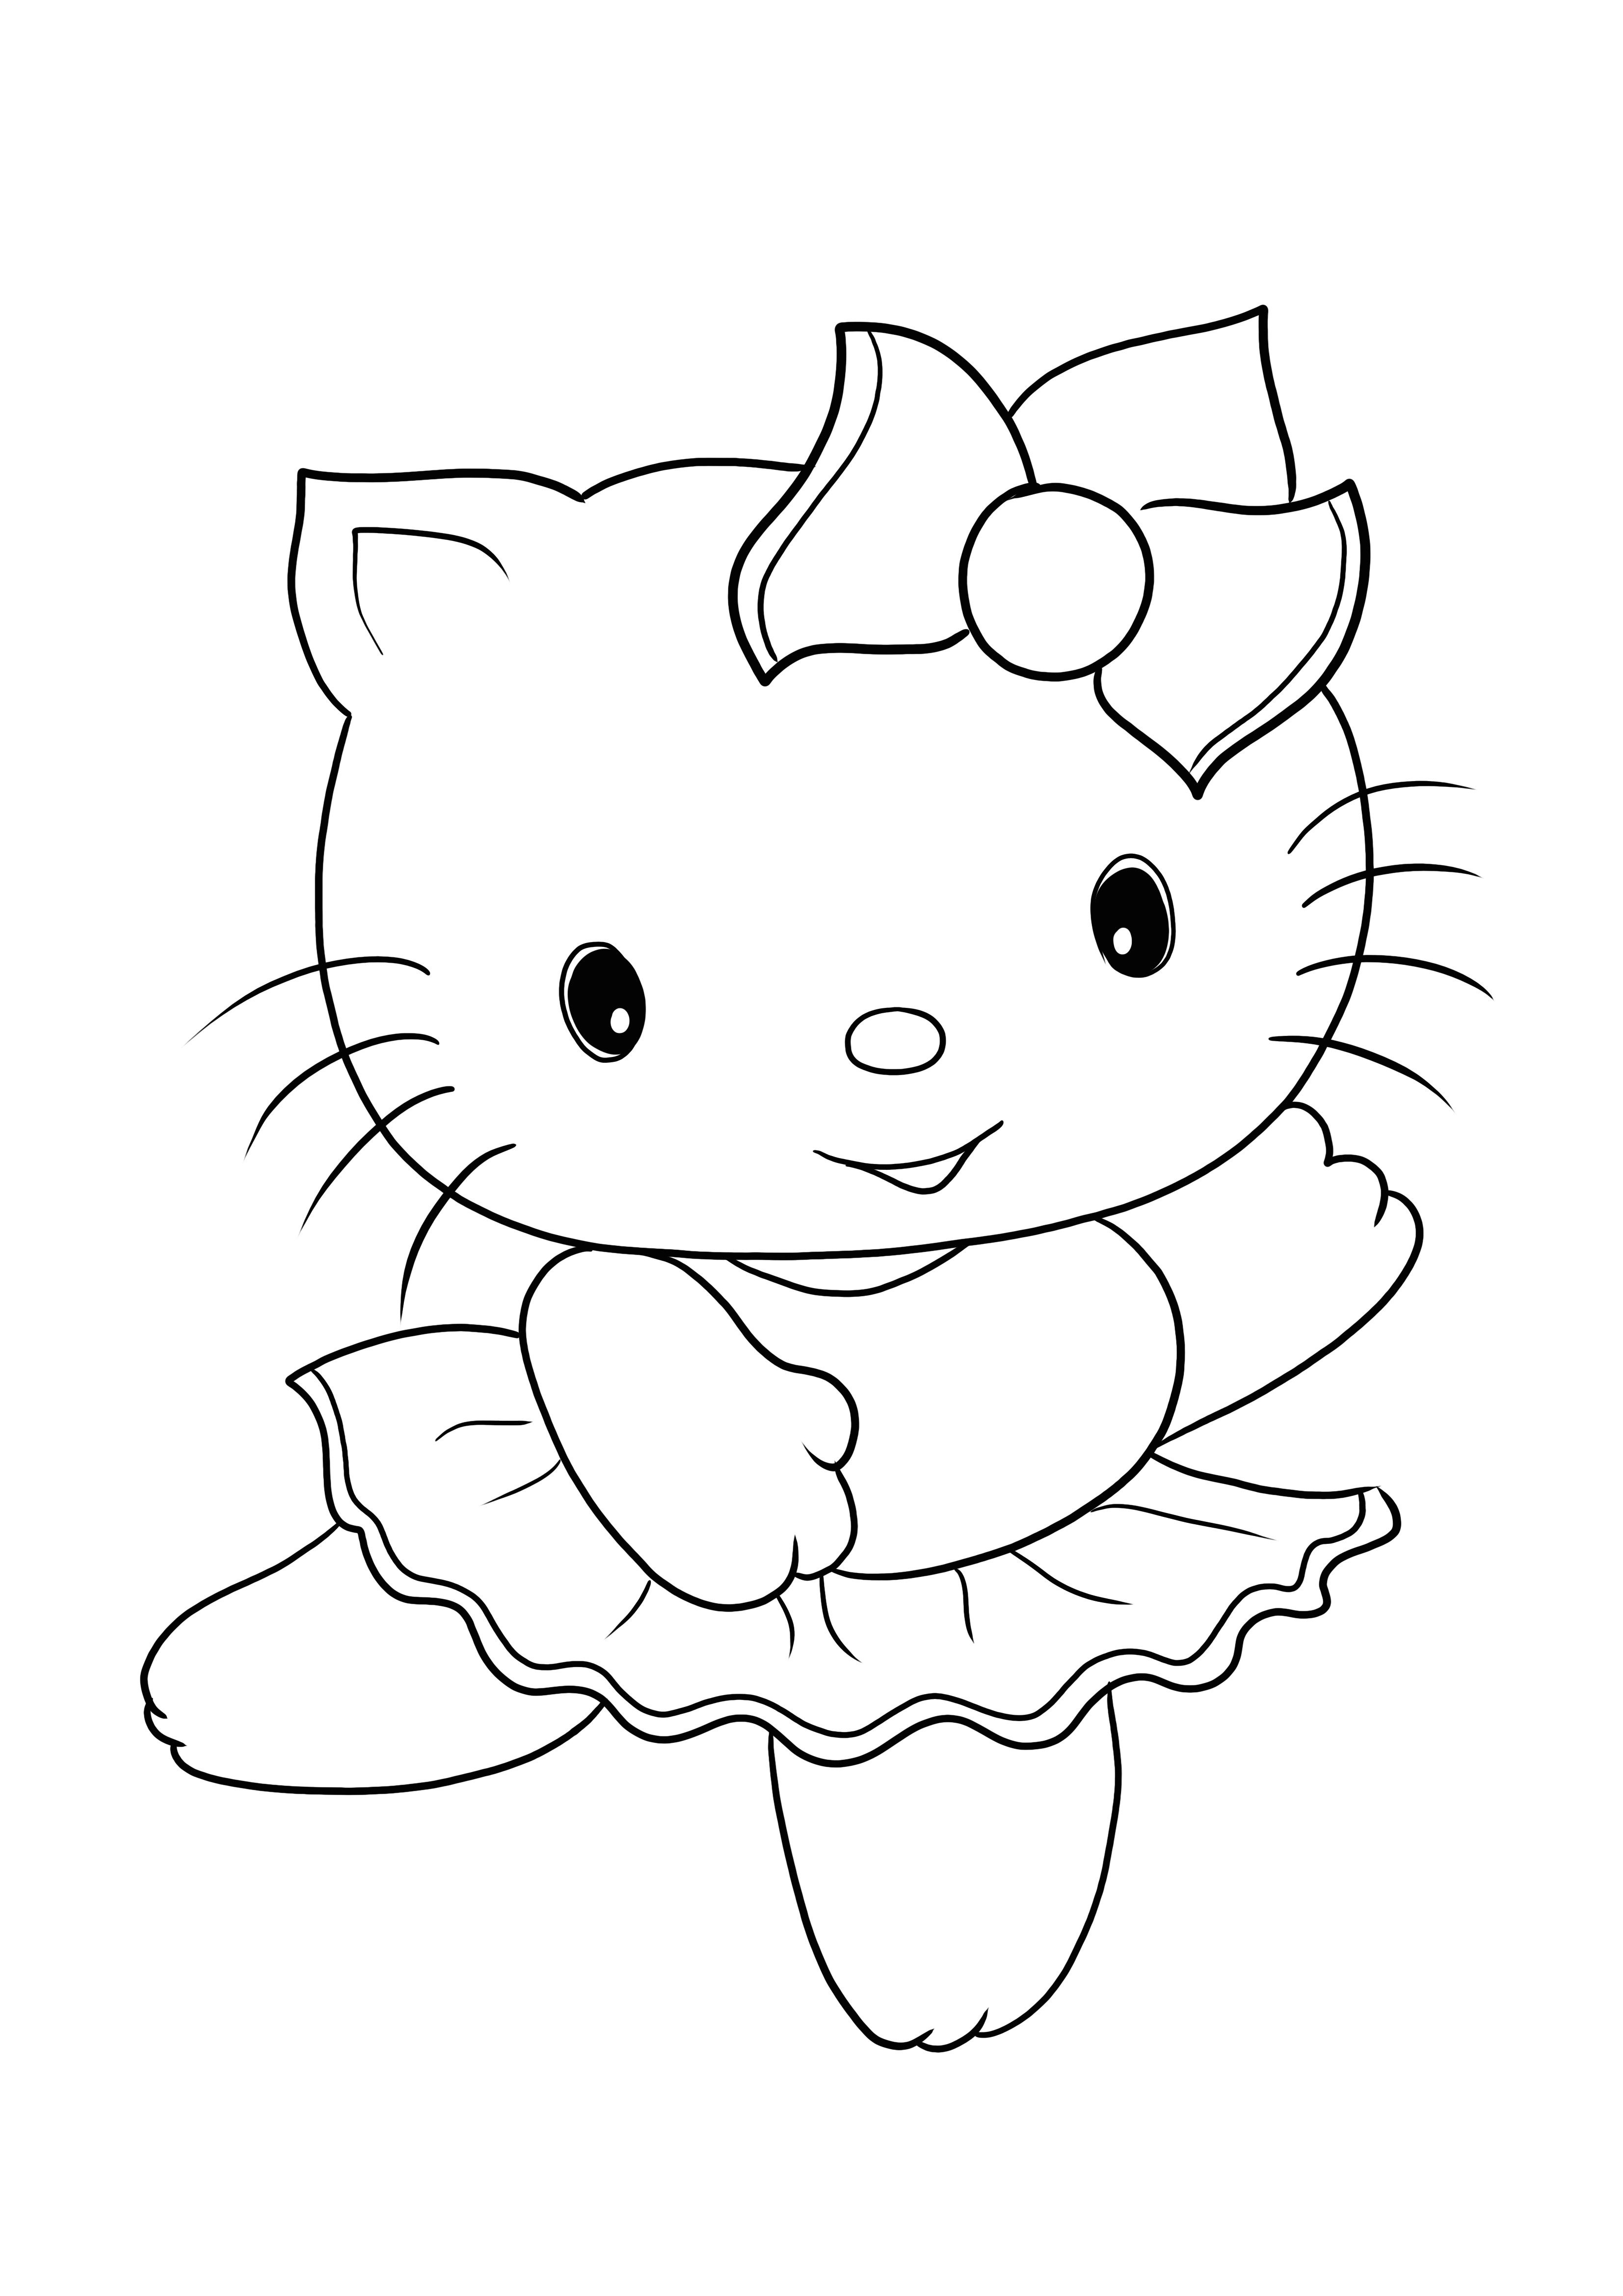 Bezpłatne drukowanie i kolorowanie uroczego obrazka Hello Kitty dla wszystkich grup wiekowych